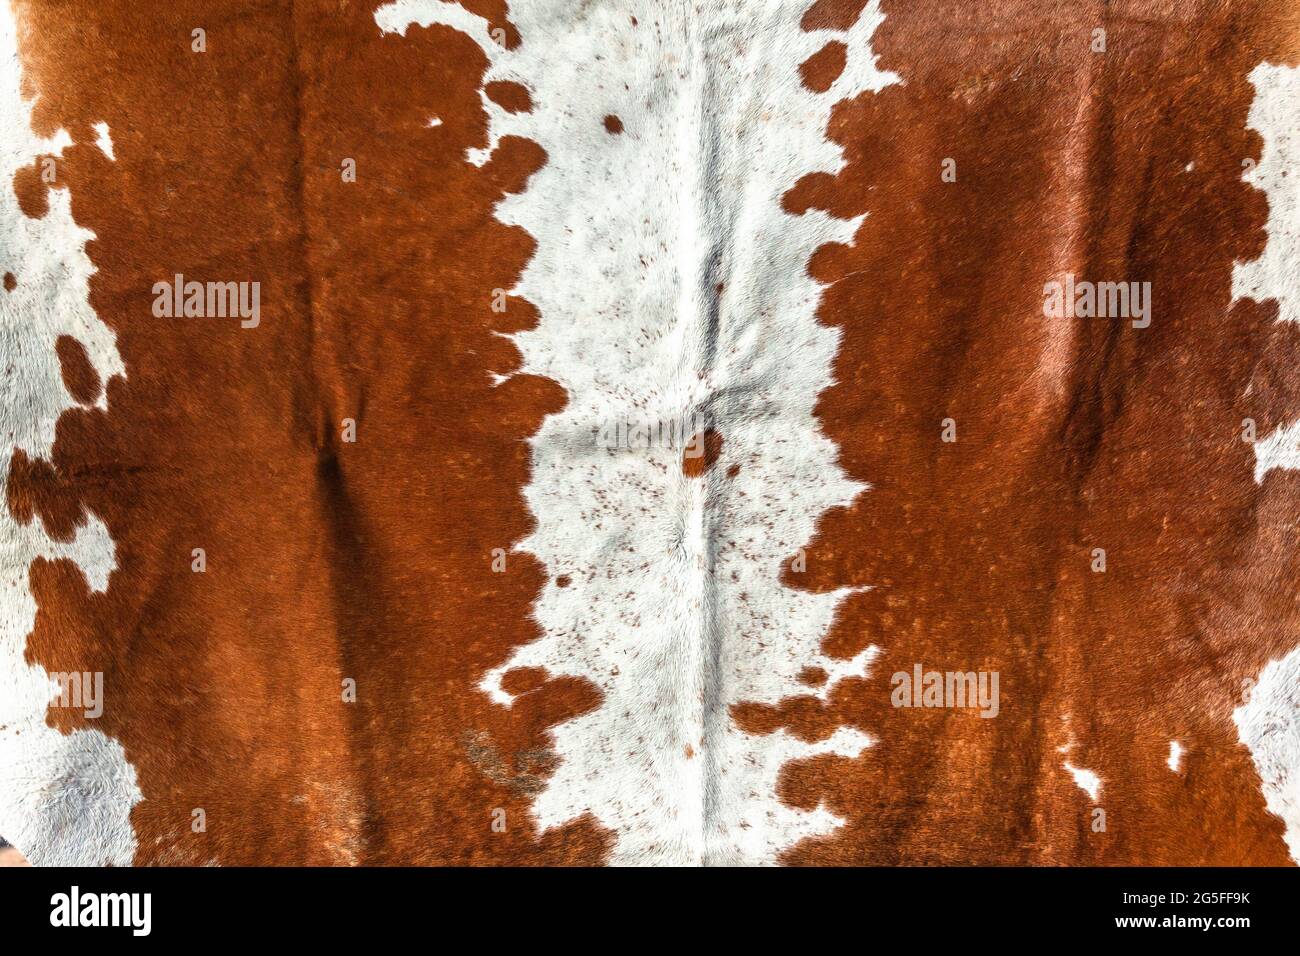 Rinder Tier Fell Haut versteckt Nahaufnahme Foto Bild abstrakt Hintergrund Detail gereinigt zusammen behandelt, um Fell Teppich Dekor Lifestyle zu machen. Stockfoto